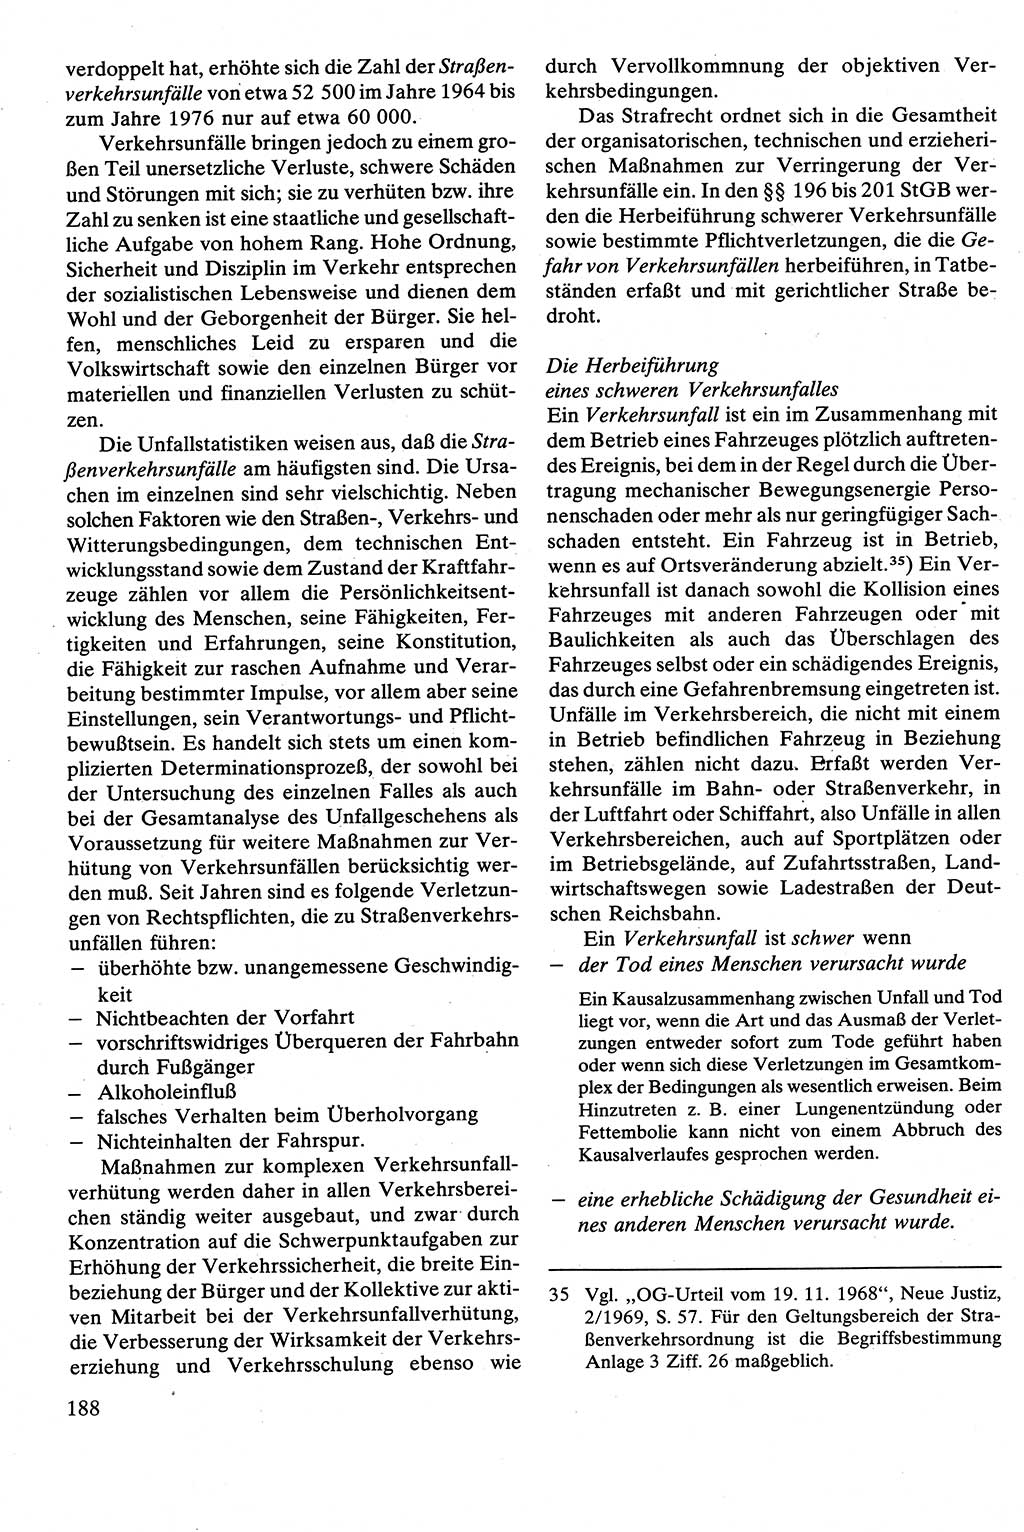 Strafrecht [Deutsche Demokratische Republik (DDR)], Besonderer Teil, Lehrbuch 1981, Seite 188 (Strafr. DDR BT Lb. 1981, S. 188)